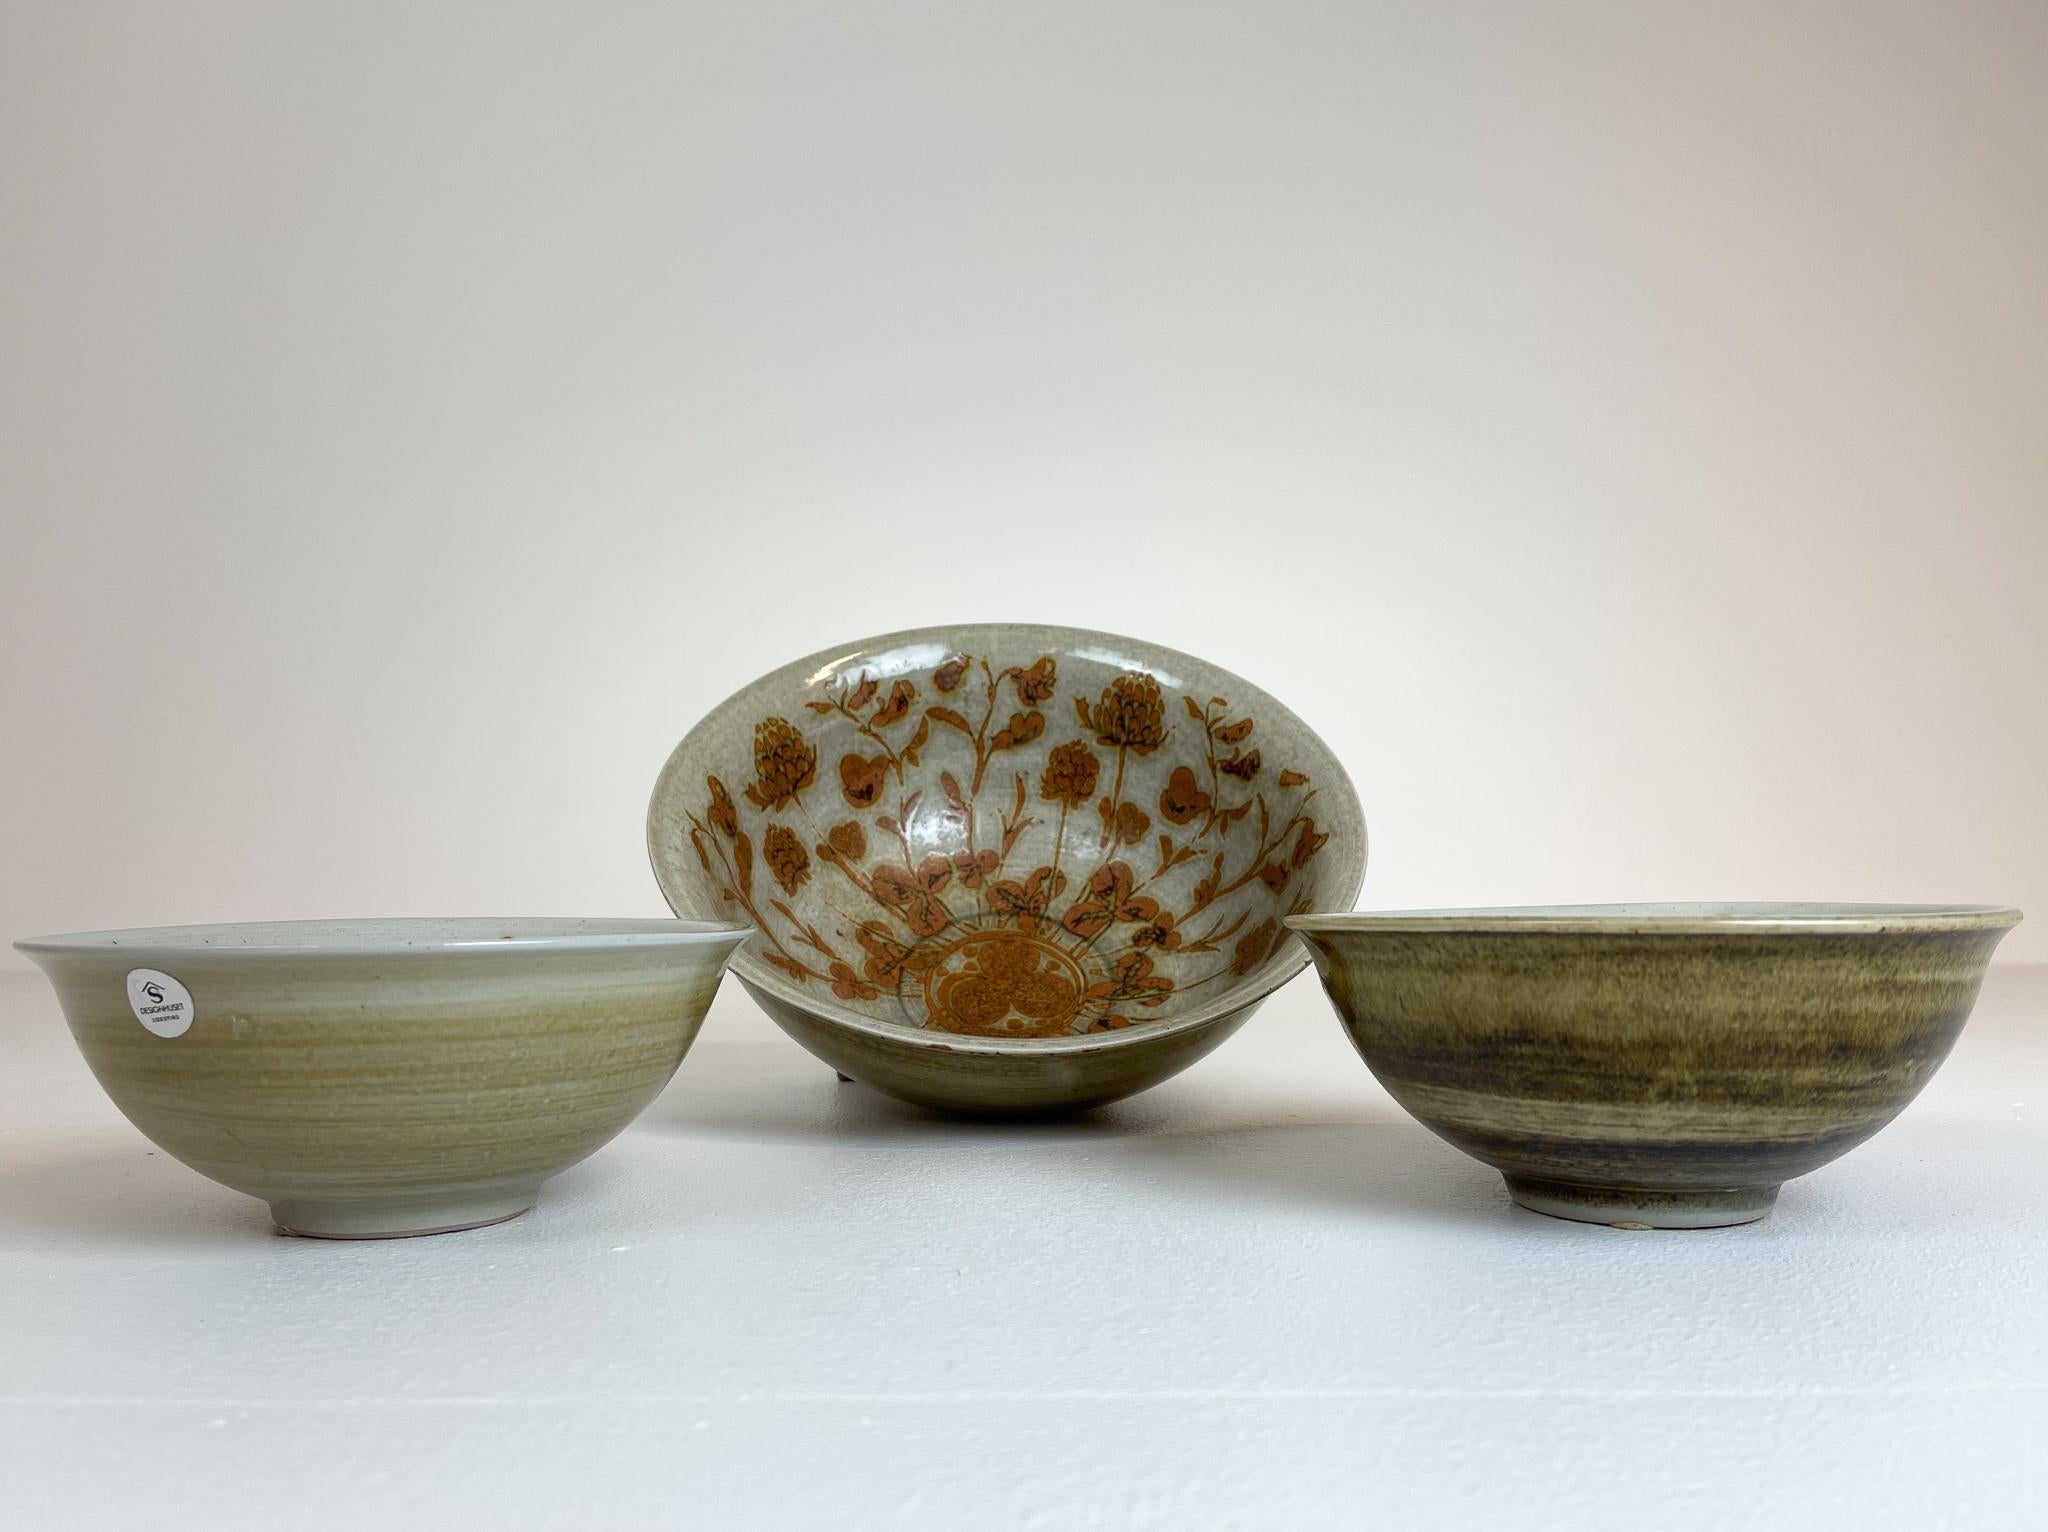 Diese drei Keramiken wurden in den 1980er Jahren in Schweden für Design Huset hergestellt und von einem der größten schwedischen Keramikdesigner, Carl-Harry Stålhane, entworfen. Wunderschöne, handgefertigte Schalen mit der Anmut schwedischer